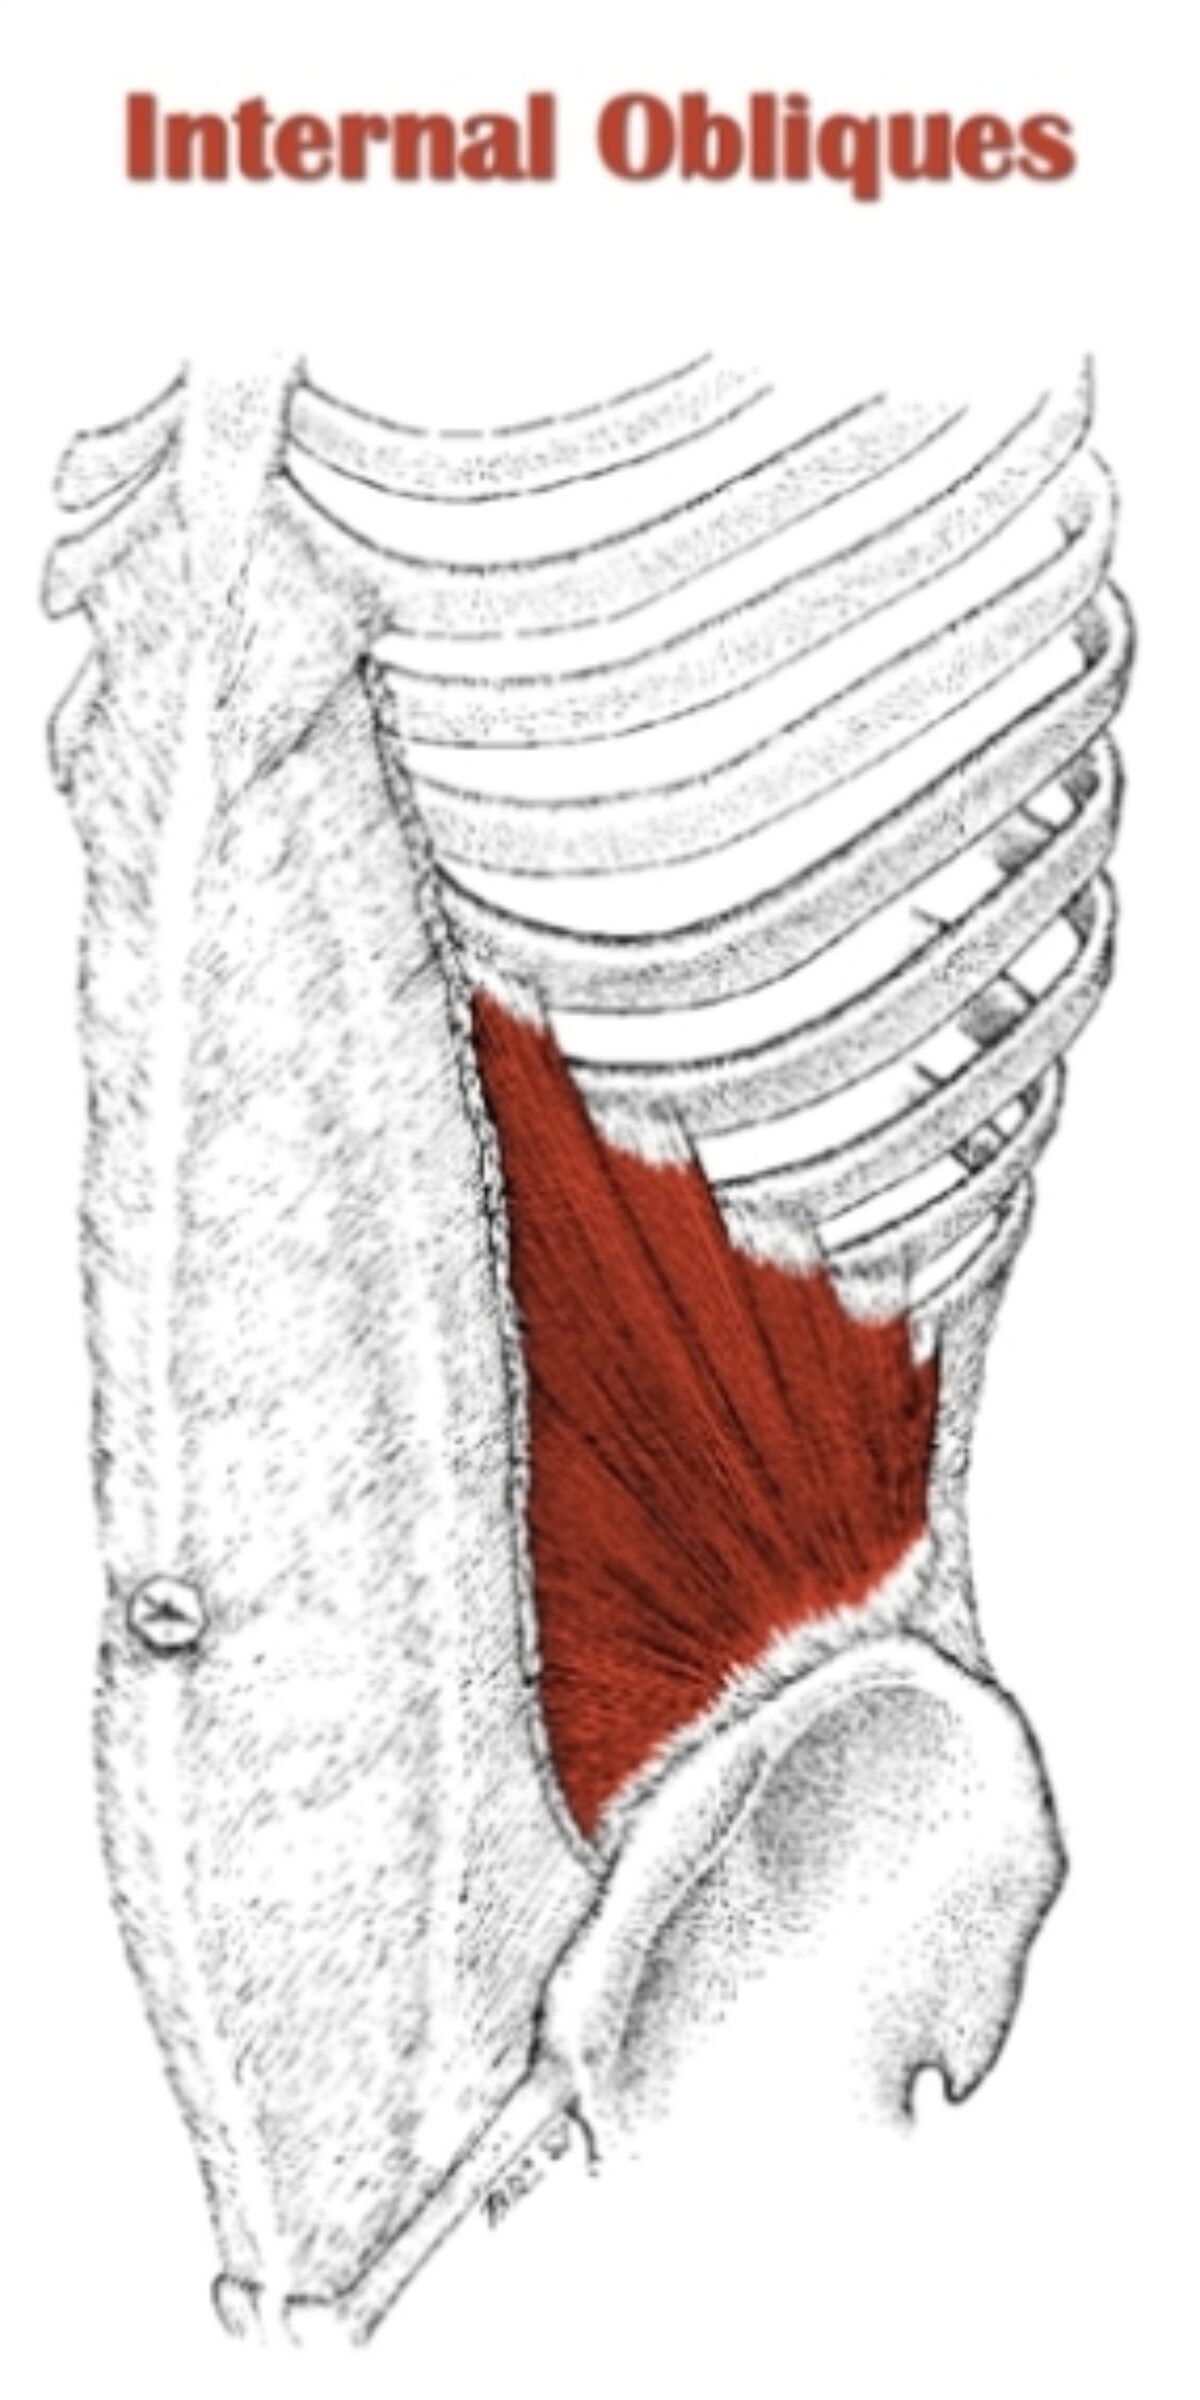 pyramidalis muscle function